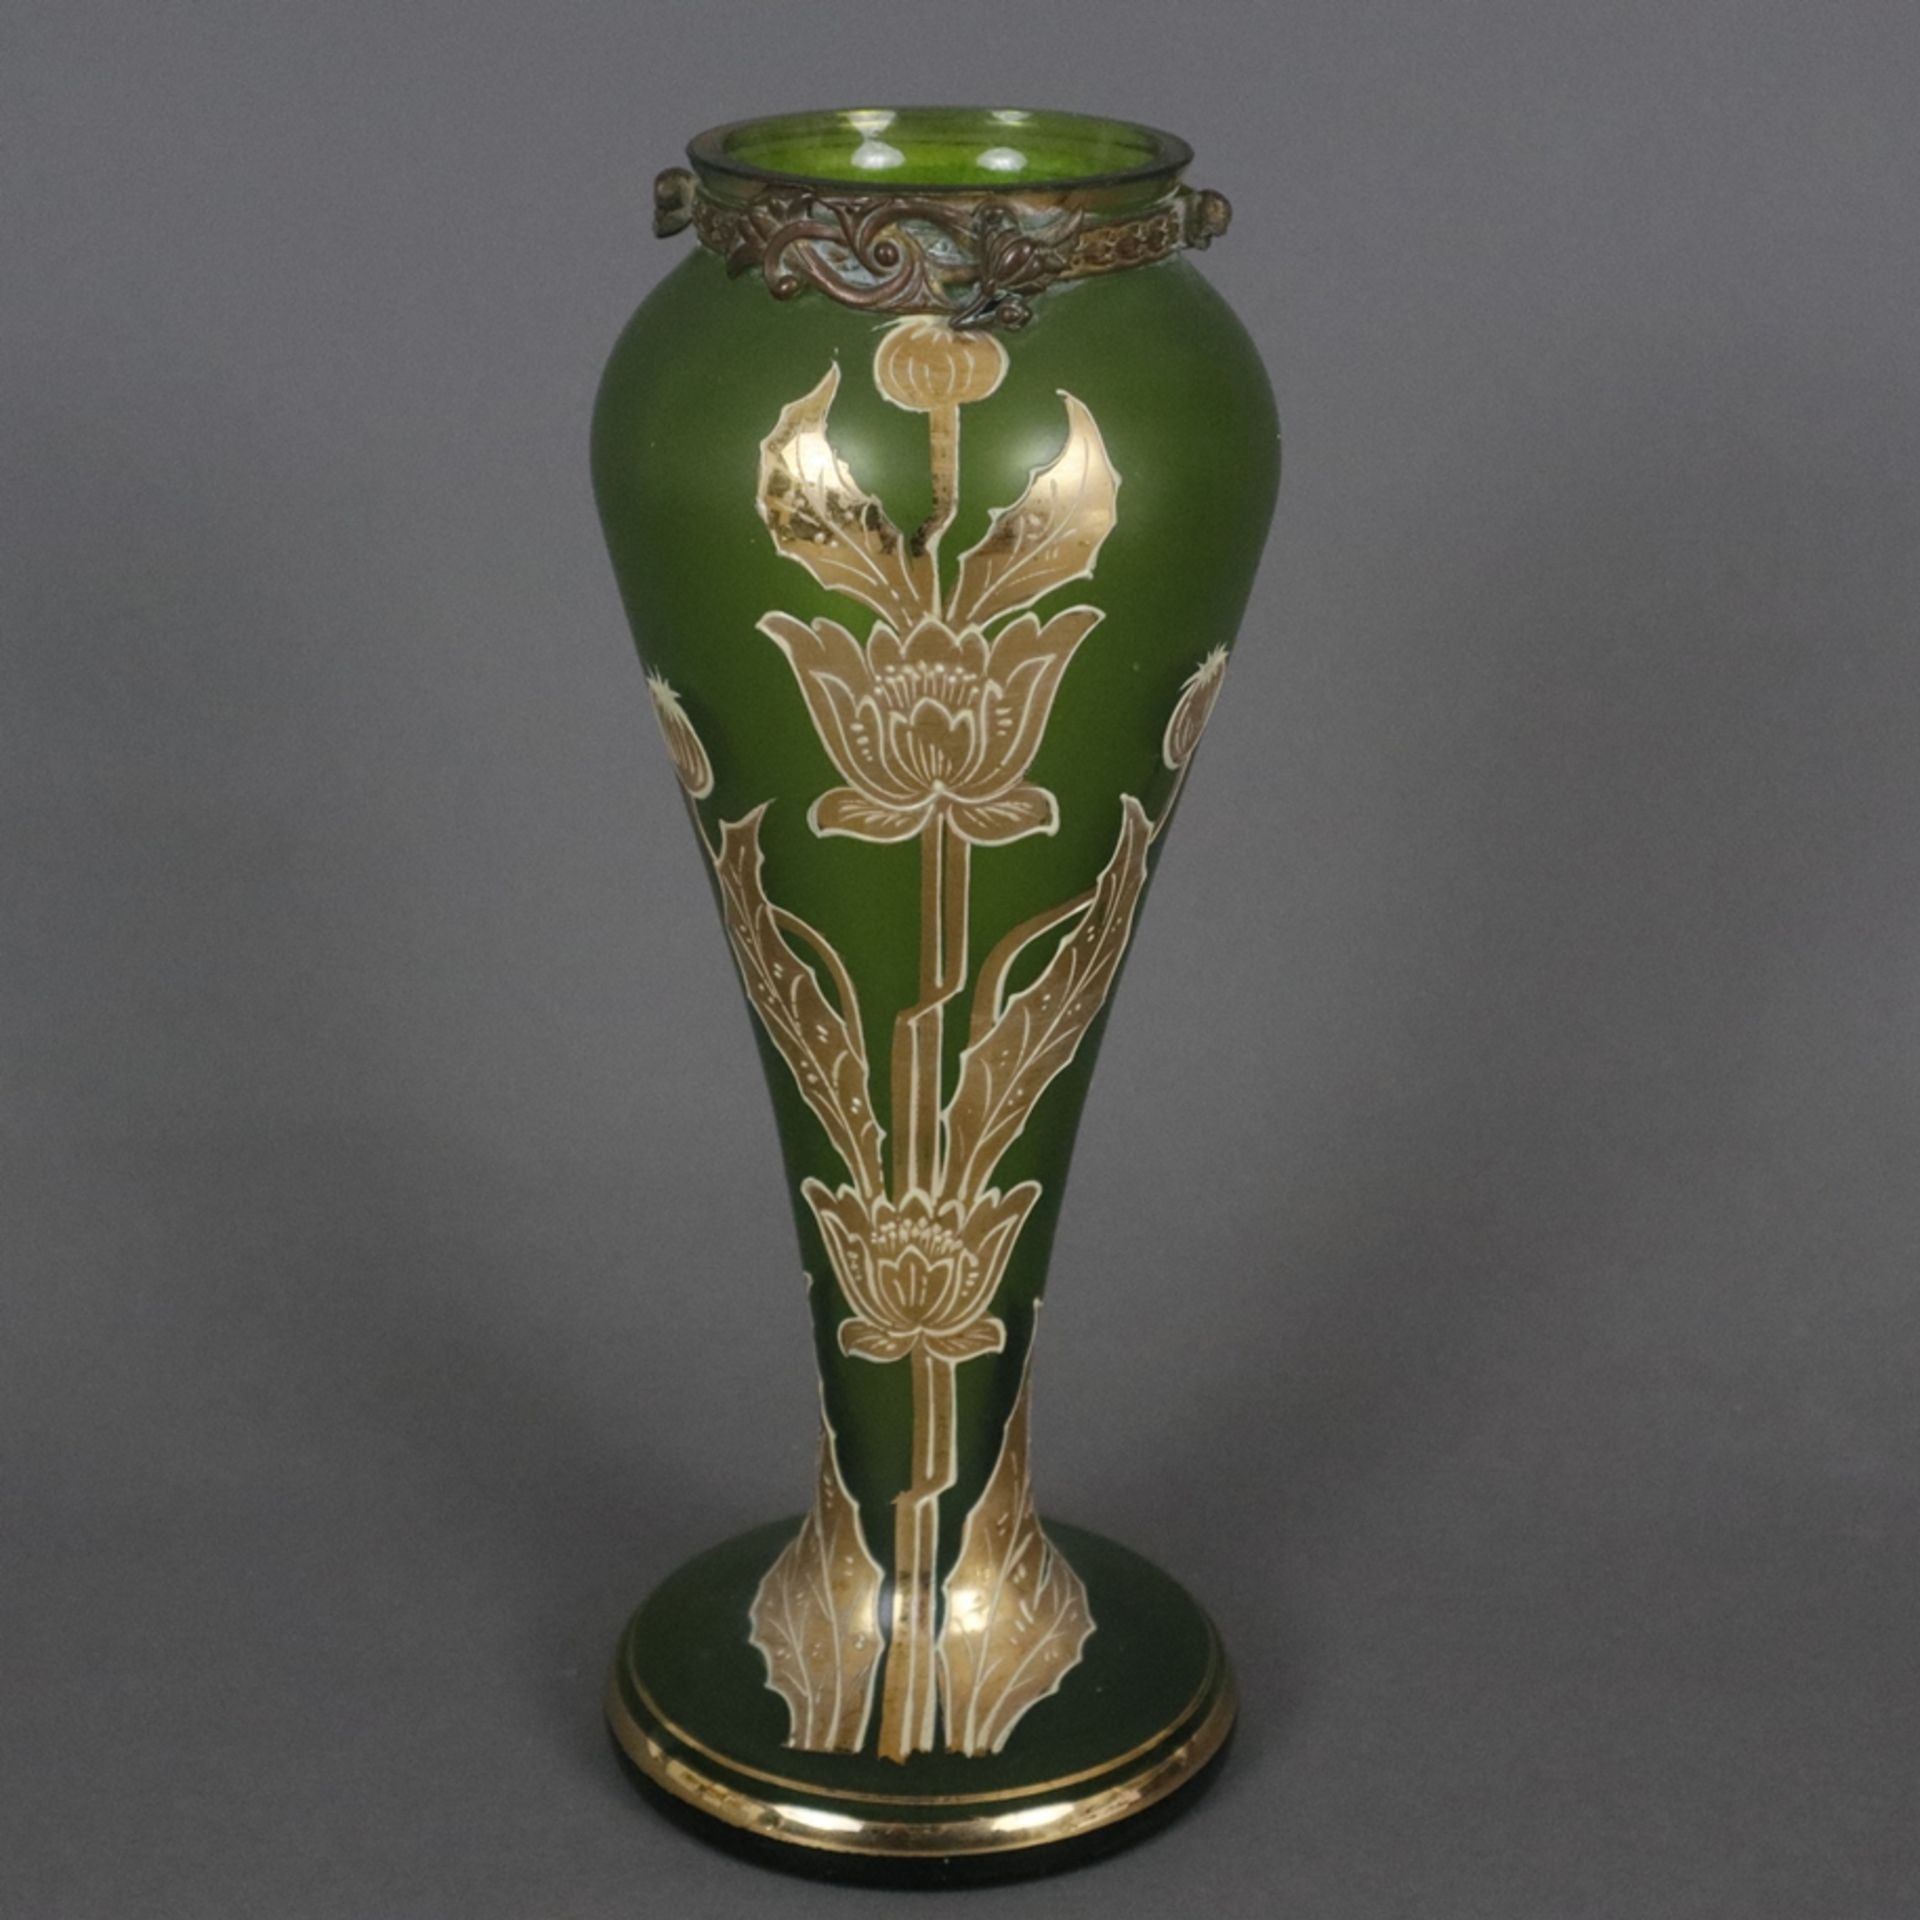 Jugendstil-Glasvase mit Metallmontur - wohl Frankreich um 1900, Klarglas mit grünem Unterfang, scha